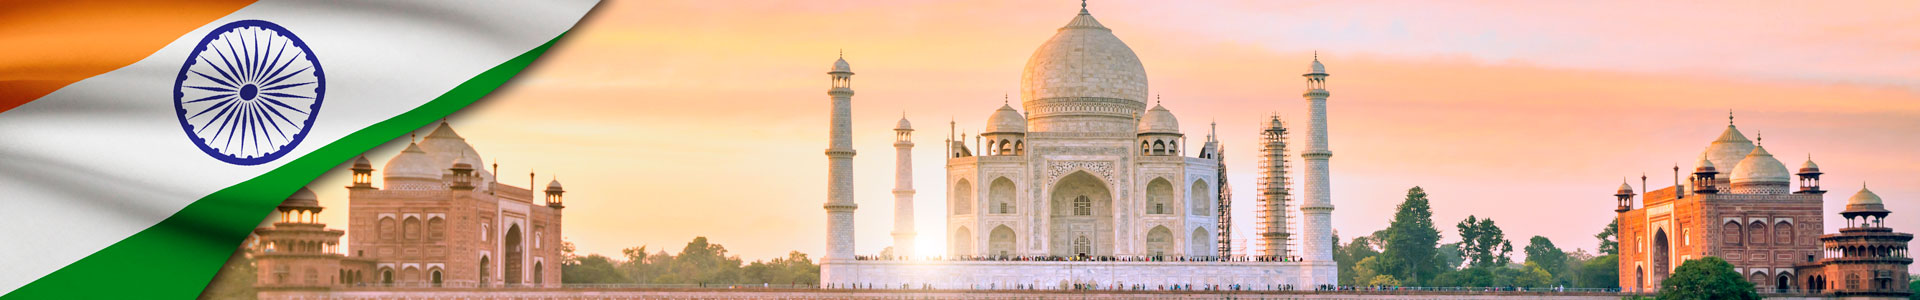 Bandera de India y vista panorámica del Taj Mahal al atardecer con reflexión en Agra, India.